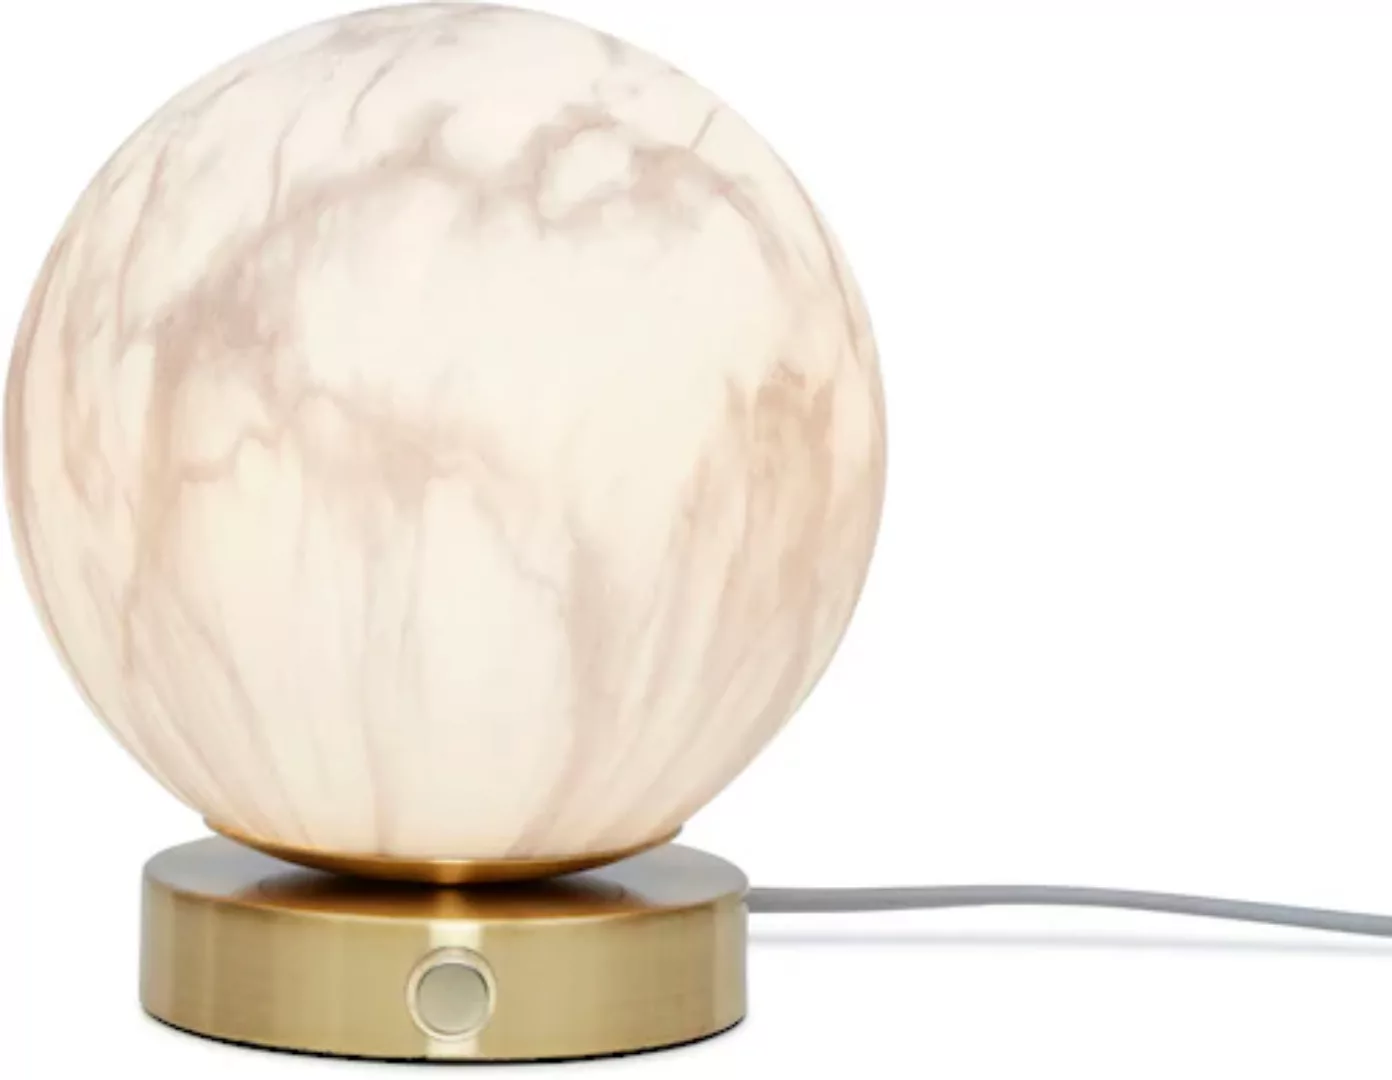 Tischleuchte Carrara glas weiß gold / Ø 16 cm - Glas in Marmoroptik - It's günstig online kaufen